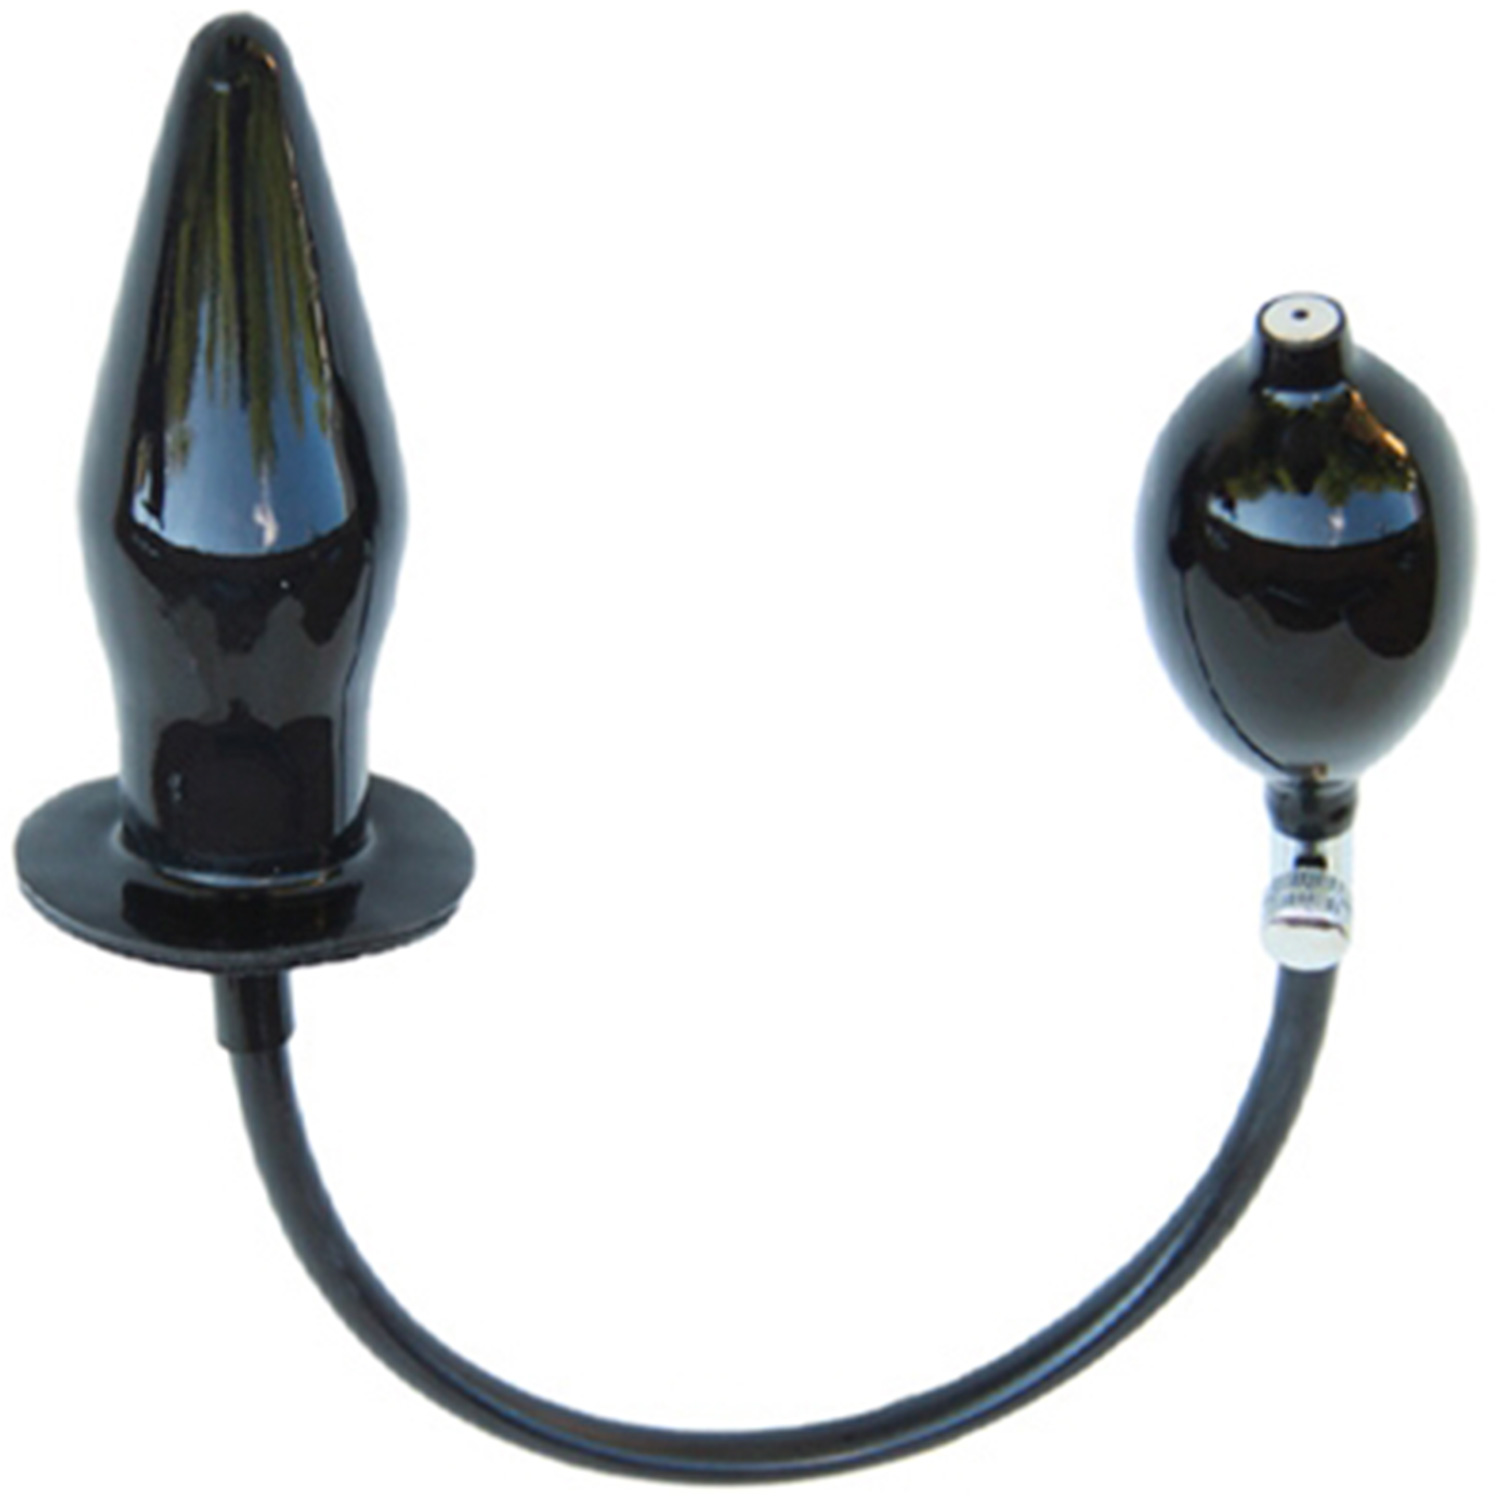 Mister B Inflatable Butt Plug - Black - Black thumbnail